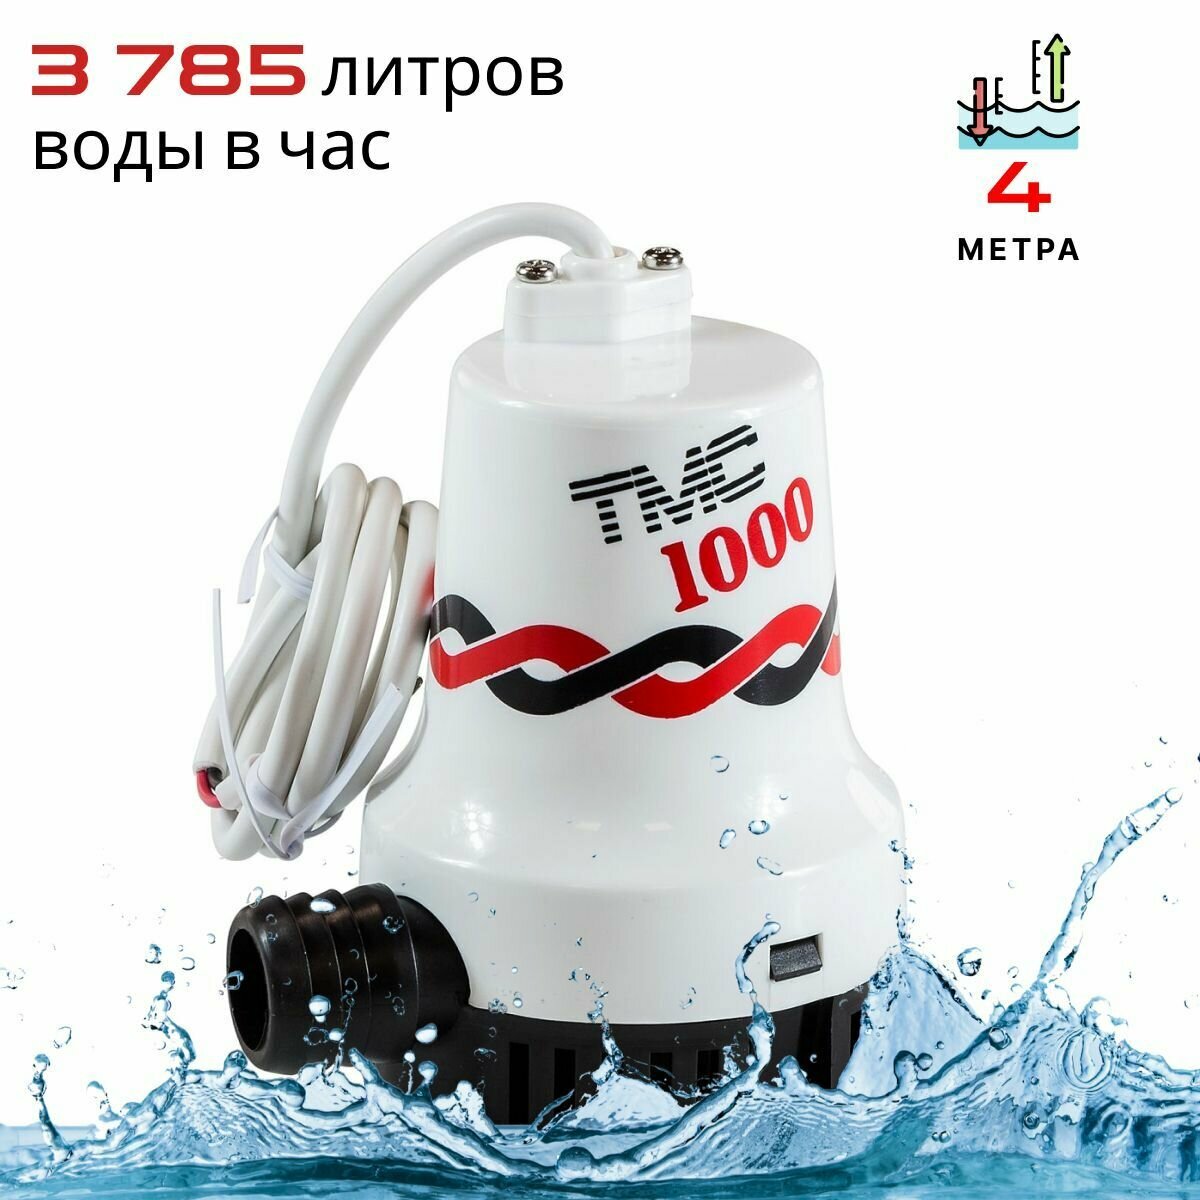 Помпа осушительная TMC 12 В, 1000GPH (3785 л/час, 4 м), для лодки / катера (насос для откачки воды на судне / помпа водооткачивающая трюмная)